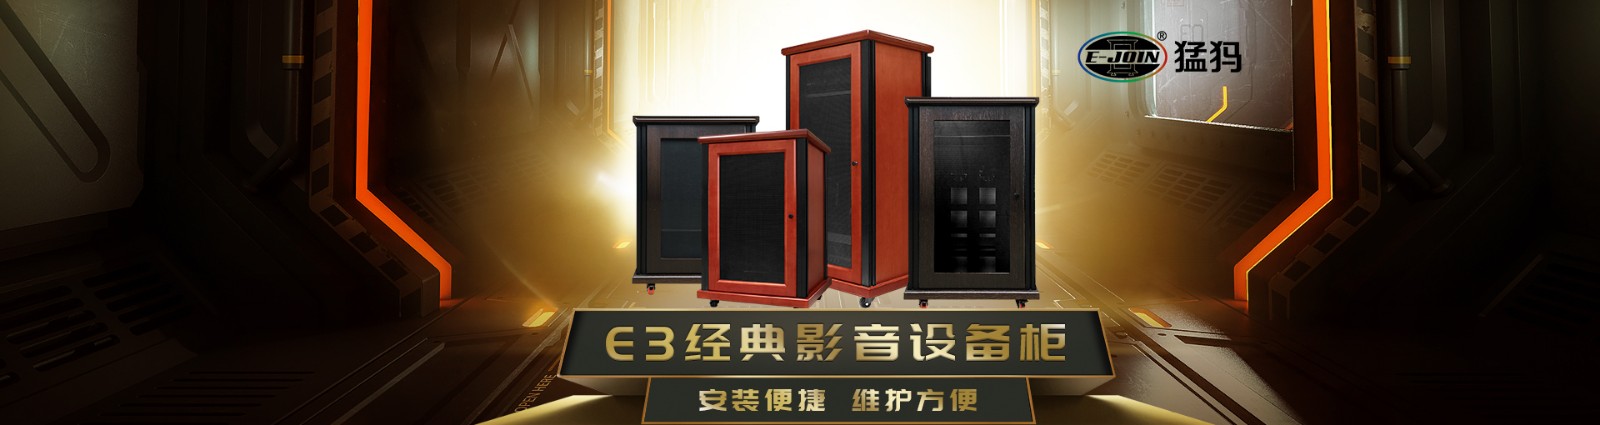 E-JOIN猛犸机柜E3-J1180H专业影音设备柜家庭网络服务器机柜实木板材可定制 